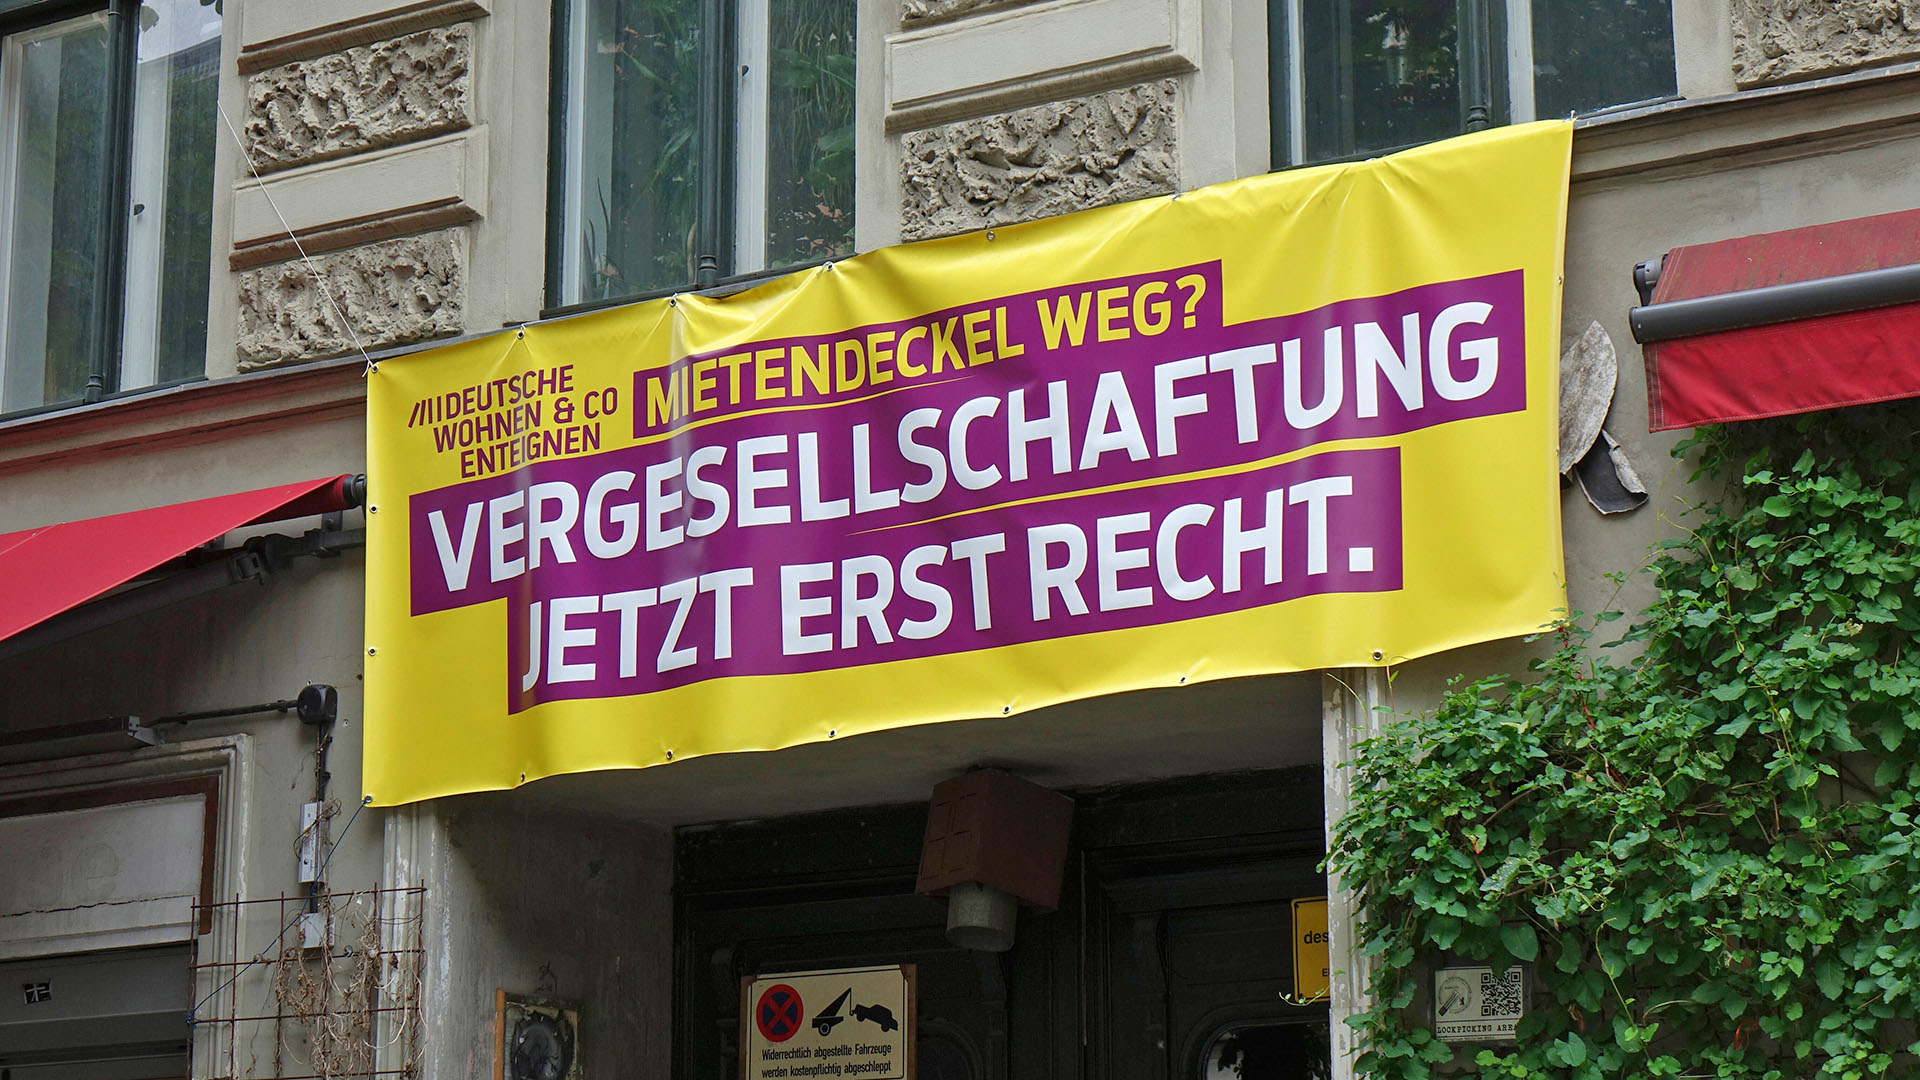 Archivbild:Transparent zur Vergesellschaftung Transparent zur Vergesellschaftung am 15.07.2022.(Quelle:imago images/S.Steinach)